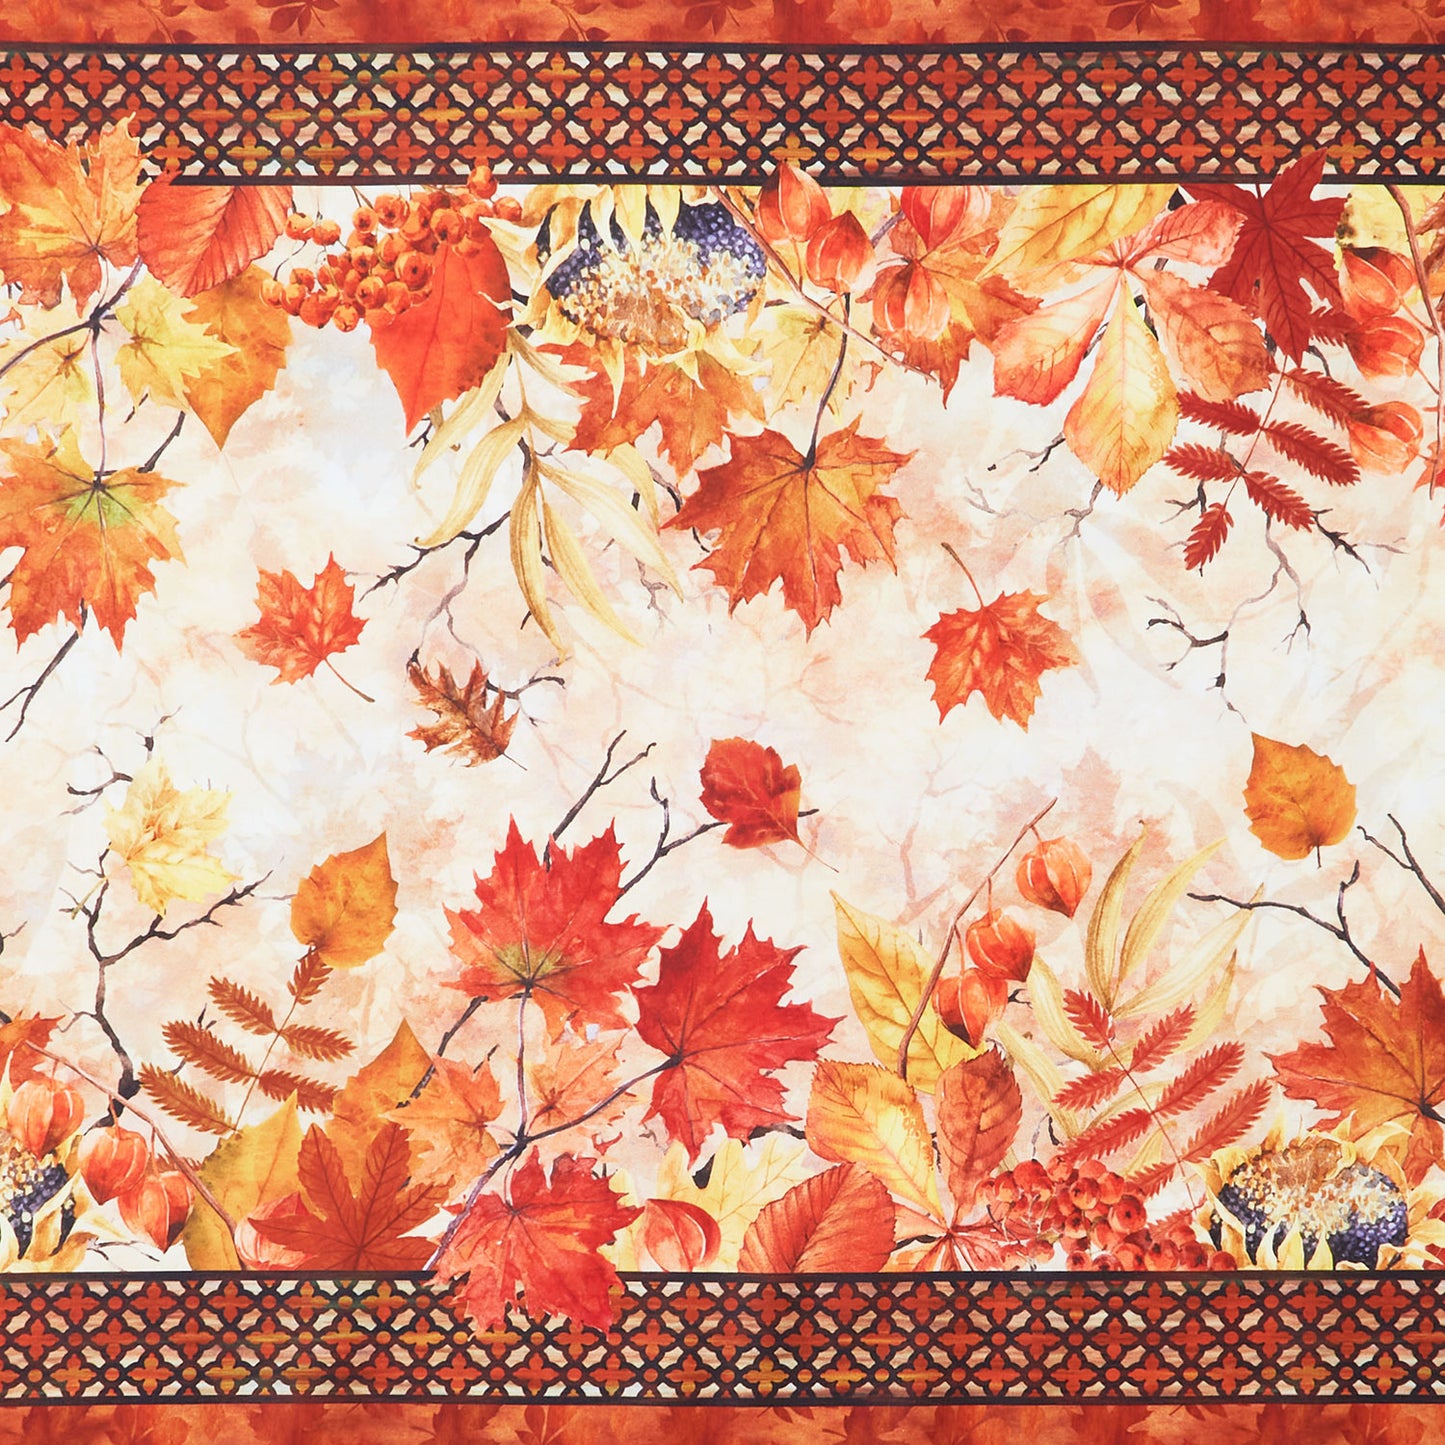 Autumn Celebration - Leaves Border Multi Yardage Primary Image